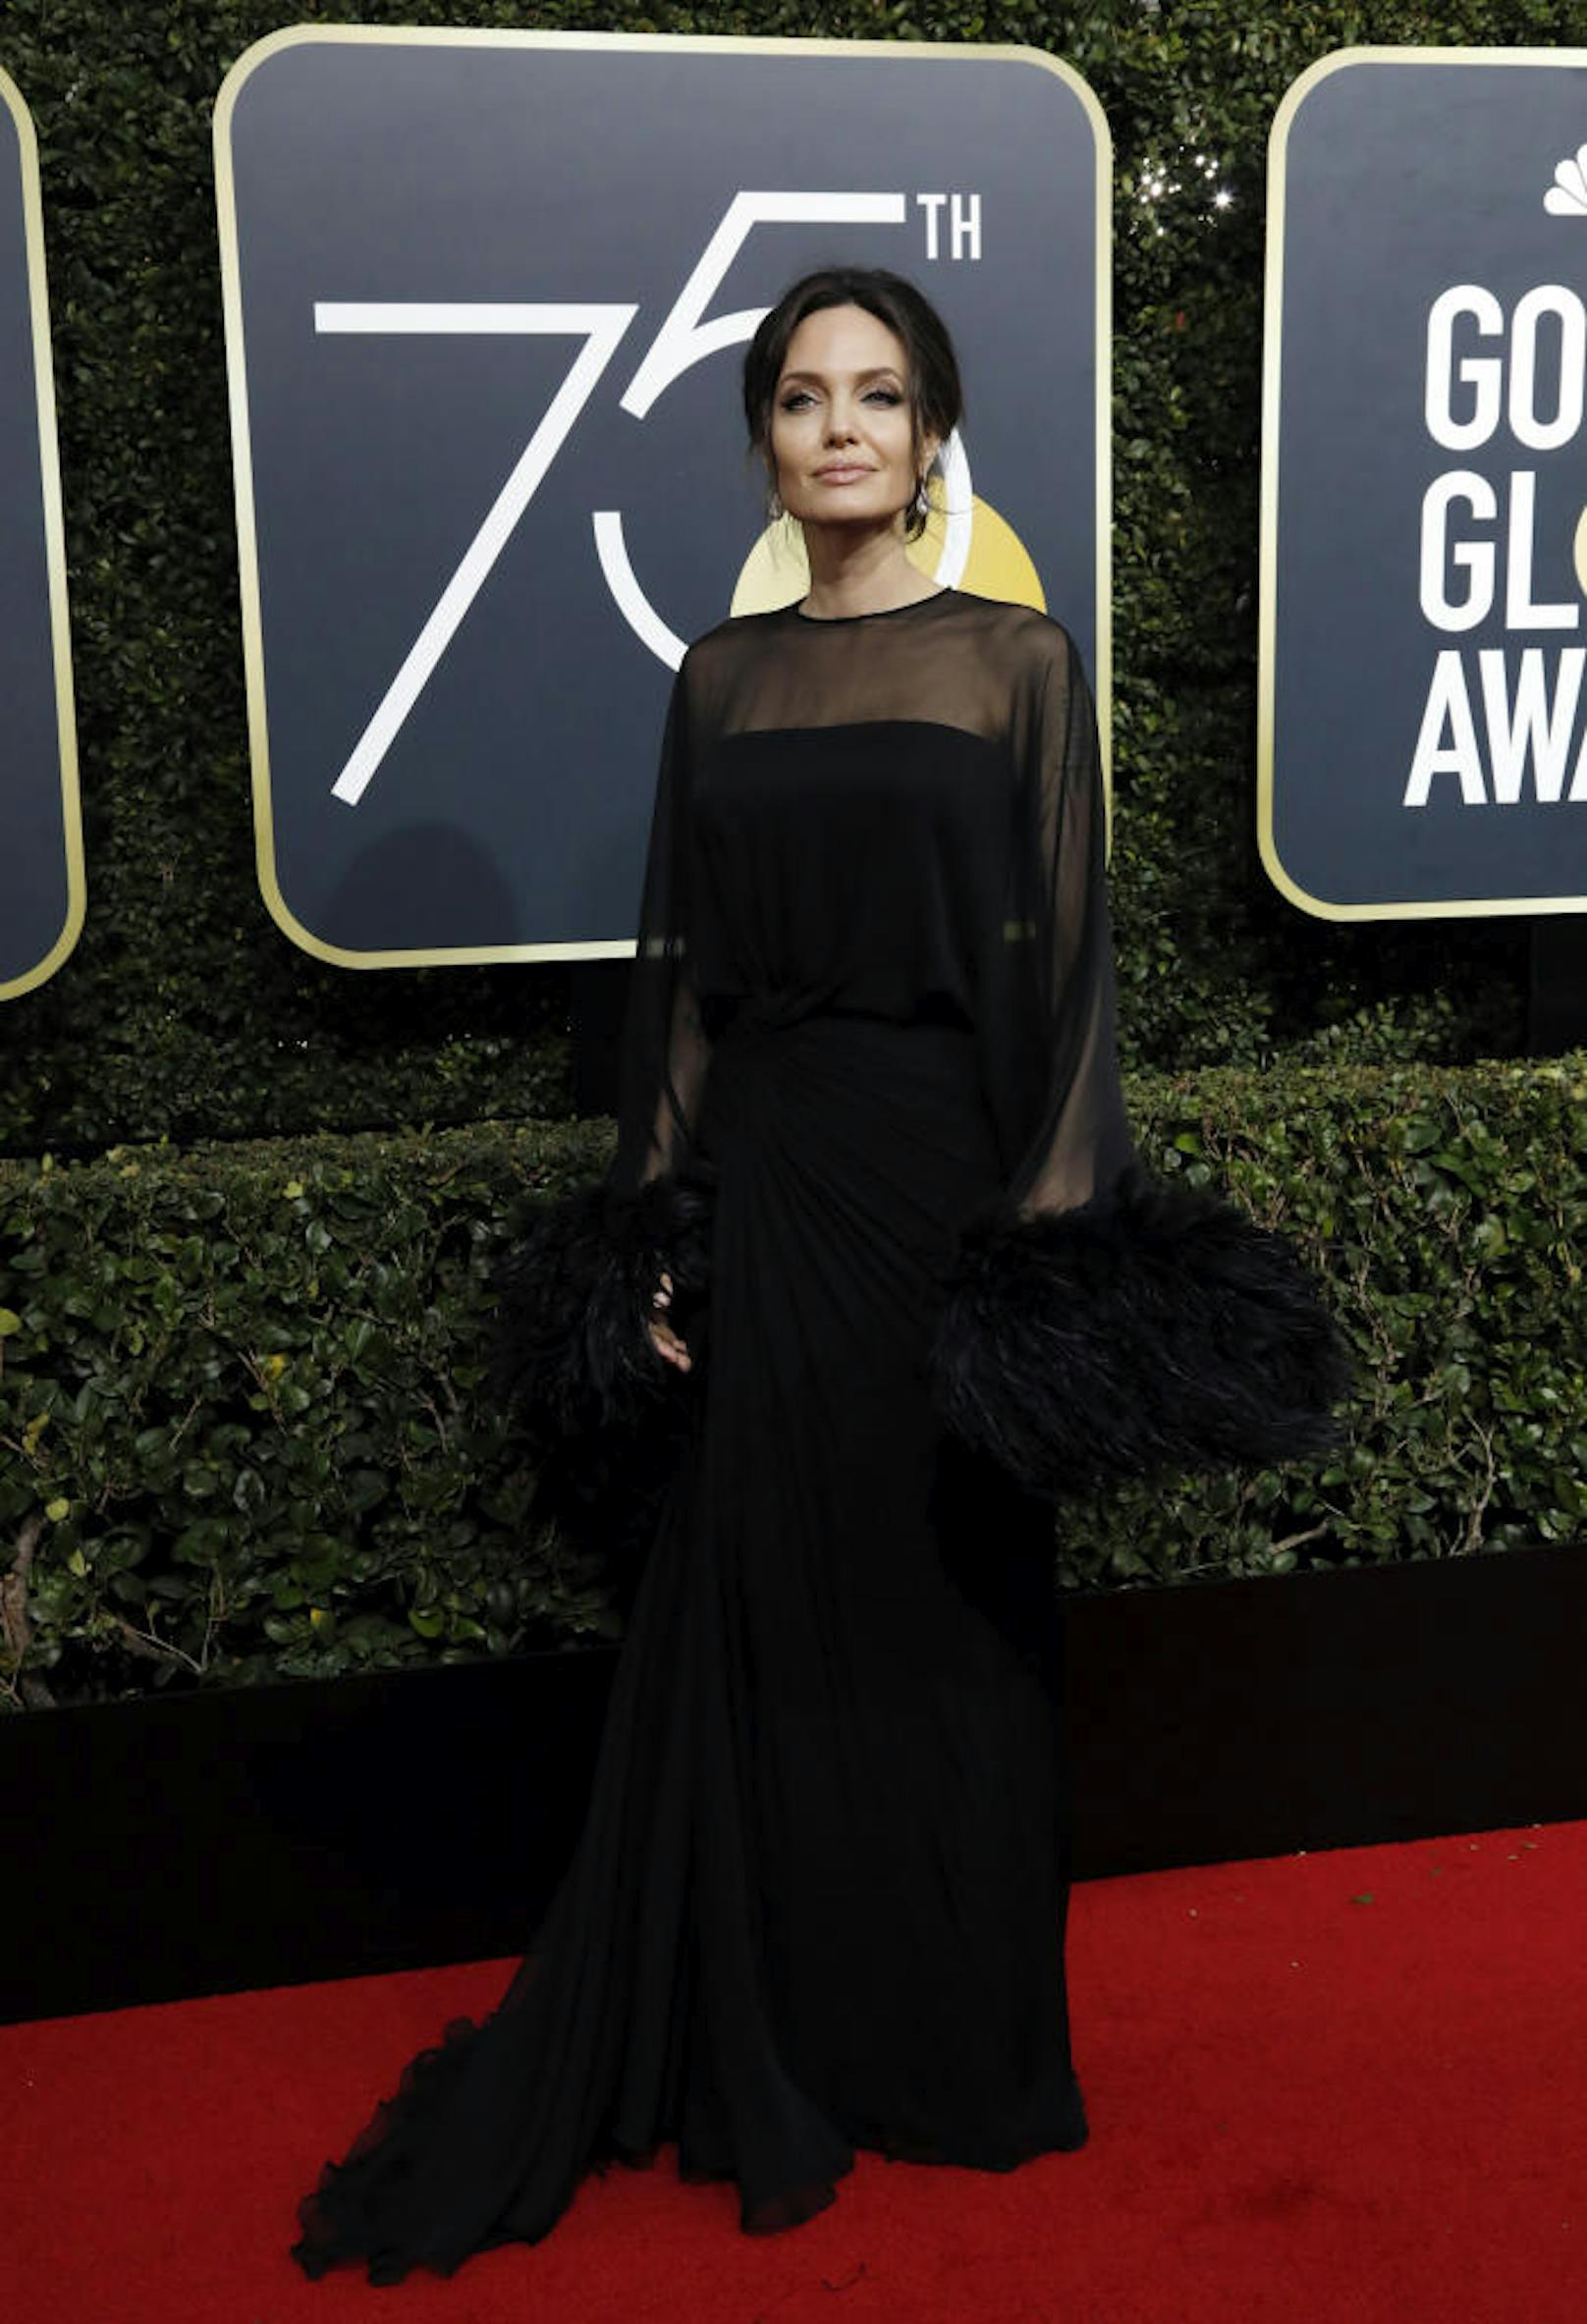 Auch Angelina Jolie hat in Schwarz schon größere Auftritte hingelegt, obwohl man zugeben muss, dass die Versace-Robe mit dem Feder-Detail äußerst elegant wirkt.